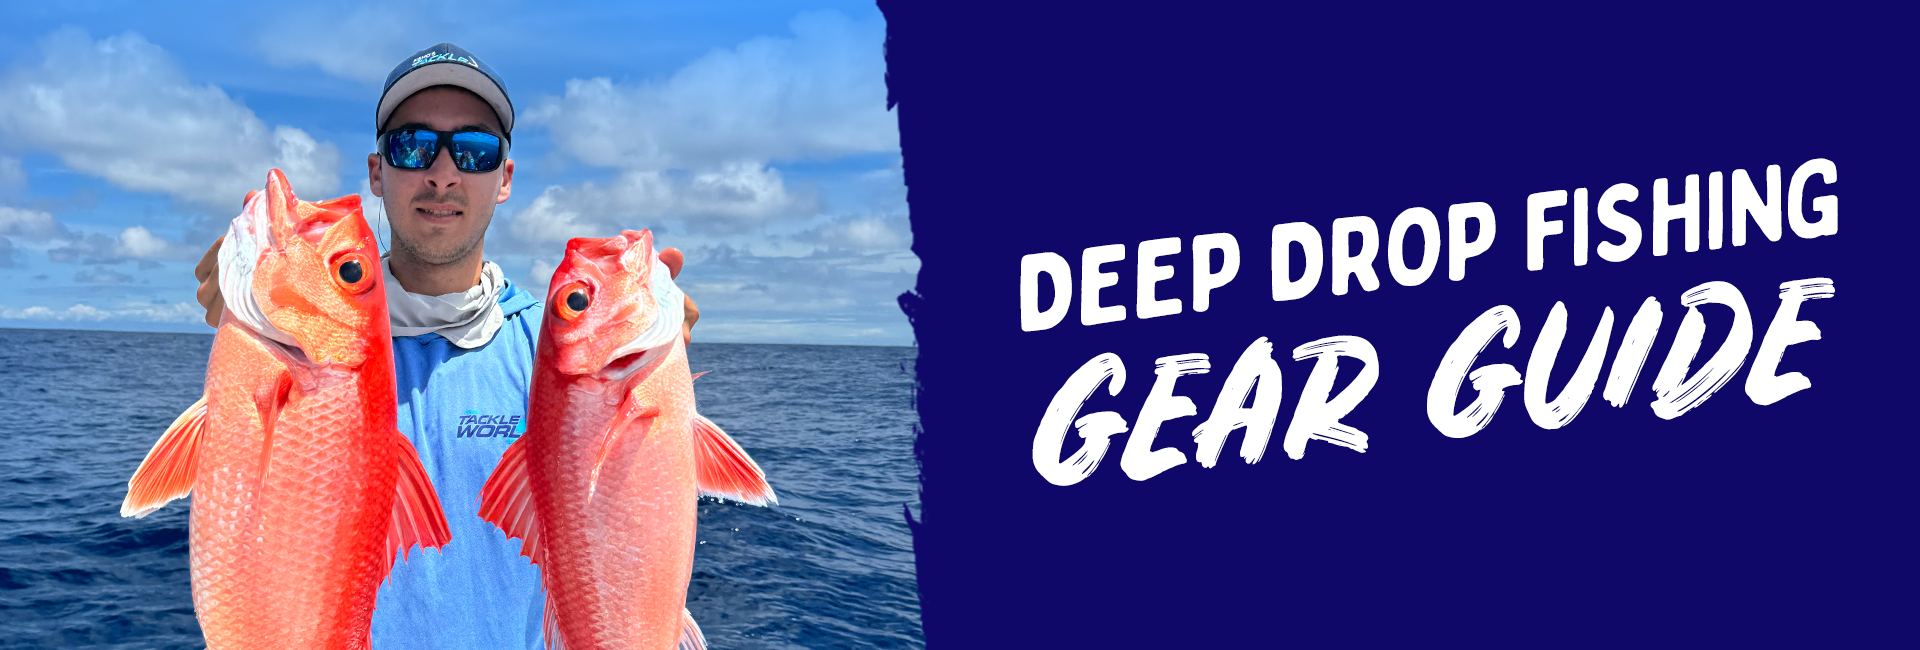 Deep Drop Fishing Gear Guide